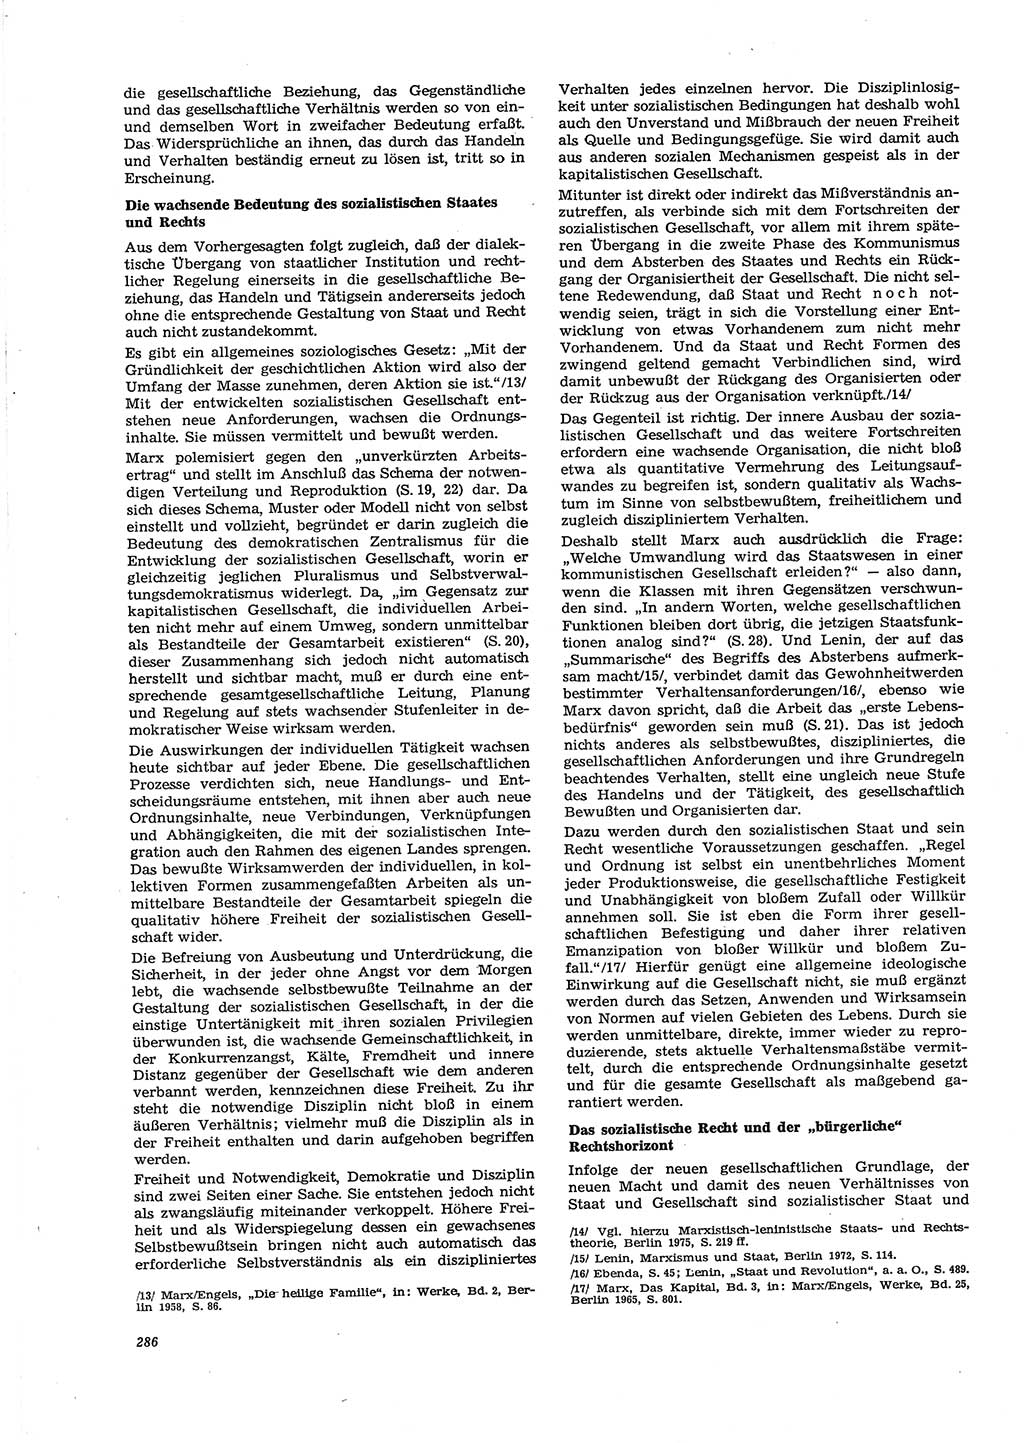 Neue Justiz (NJ), Zeitschrift für Recht und Rechtswissenschaft [Deutsche Demokratische Republik (DDR)], 29. Jahrgang 1975, Seite 286 (NJ DDR 1975, S. 286)